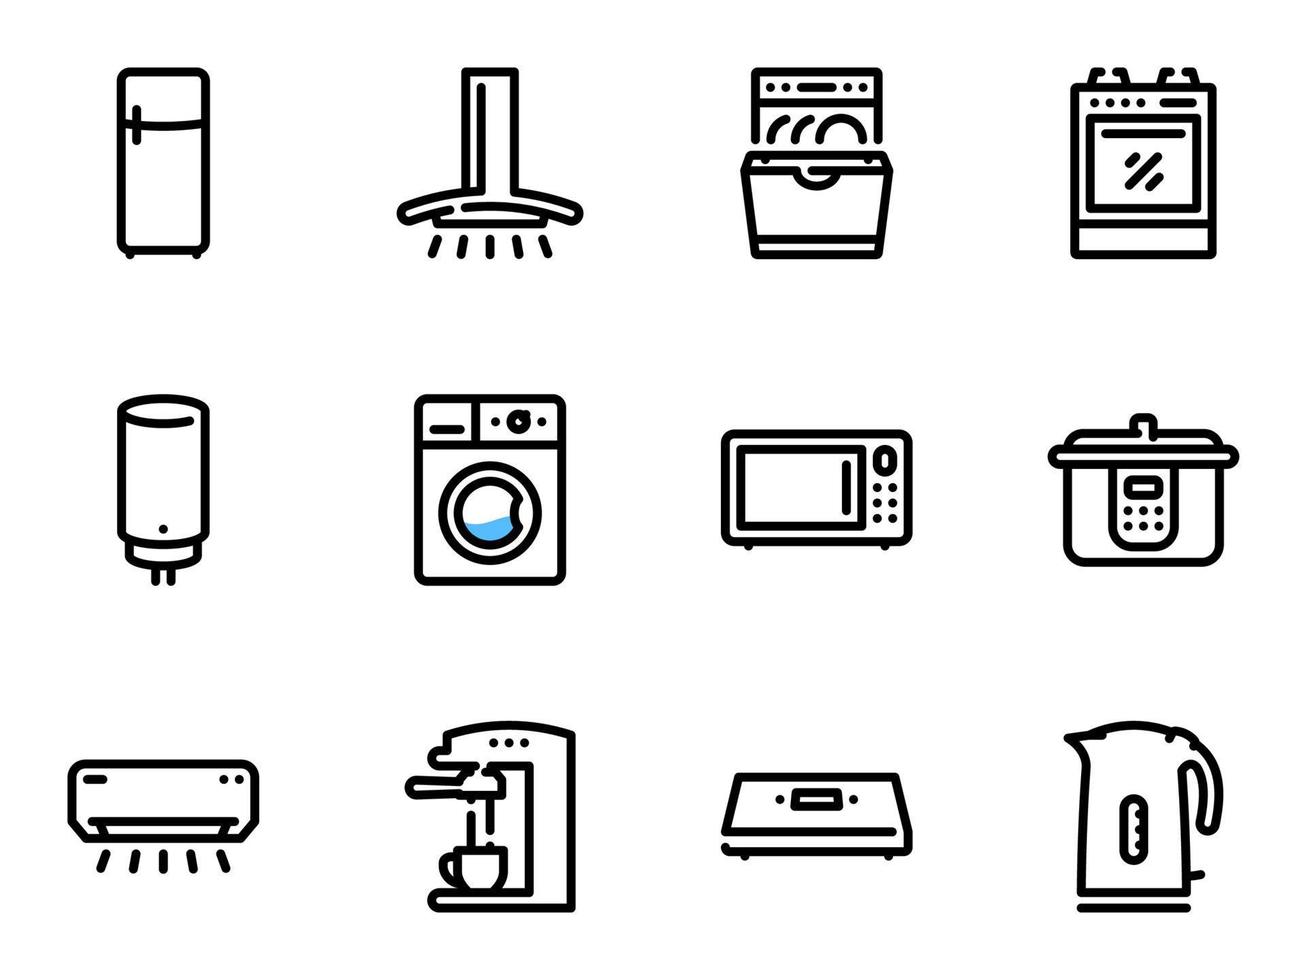 conjunto de ícones do vetor preto, isolados contra um fundo branco. ilustração em um tema utensílios de cozinha